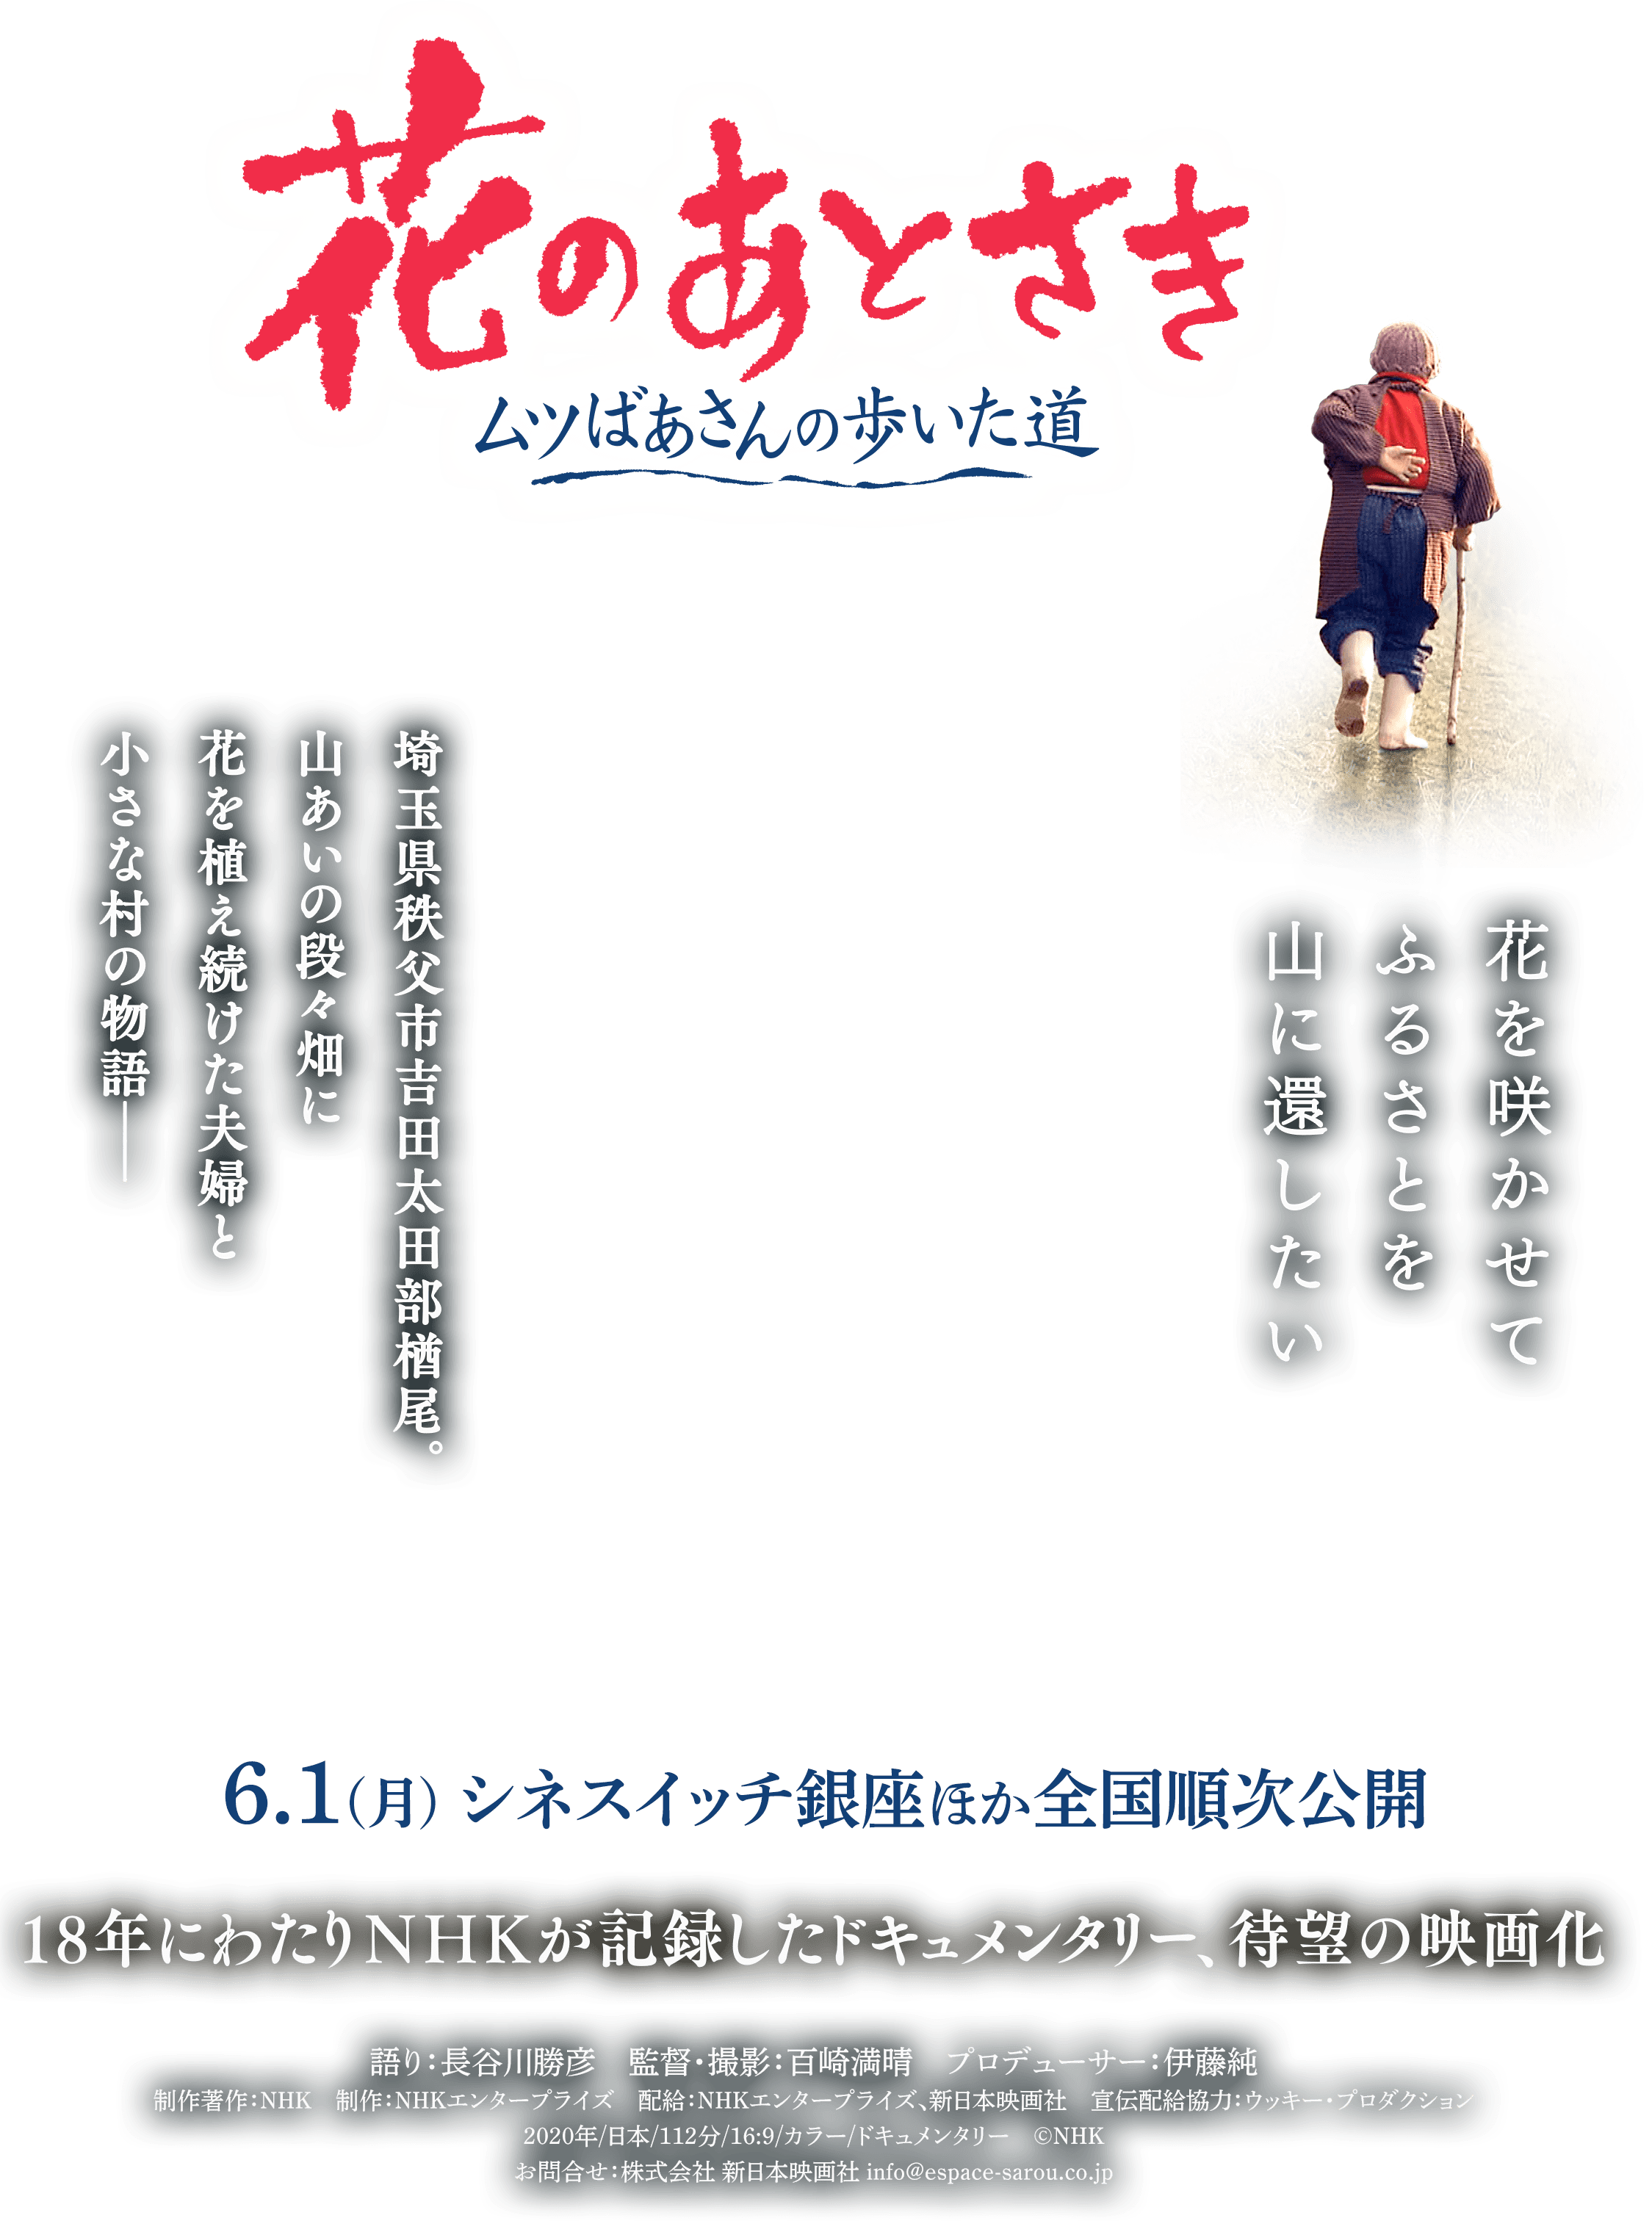 映画『花のあとさき ムツばあさんの歩いた道』公式サイト